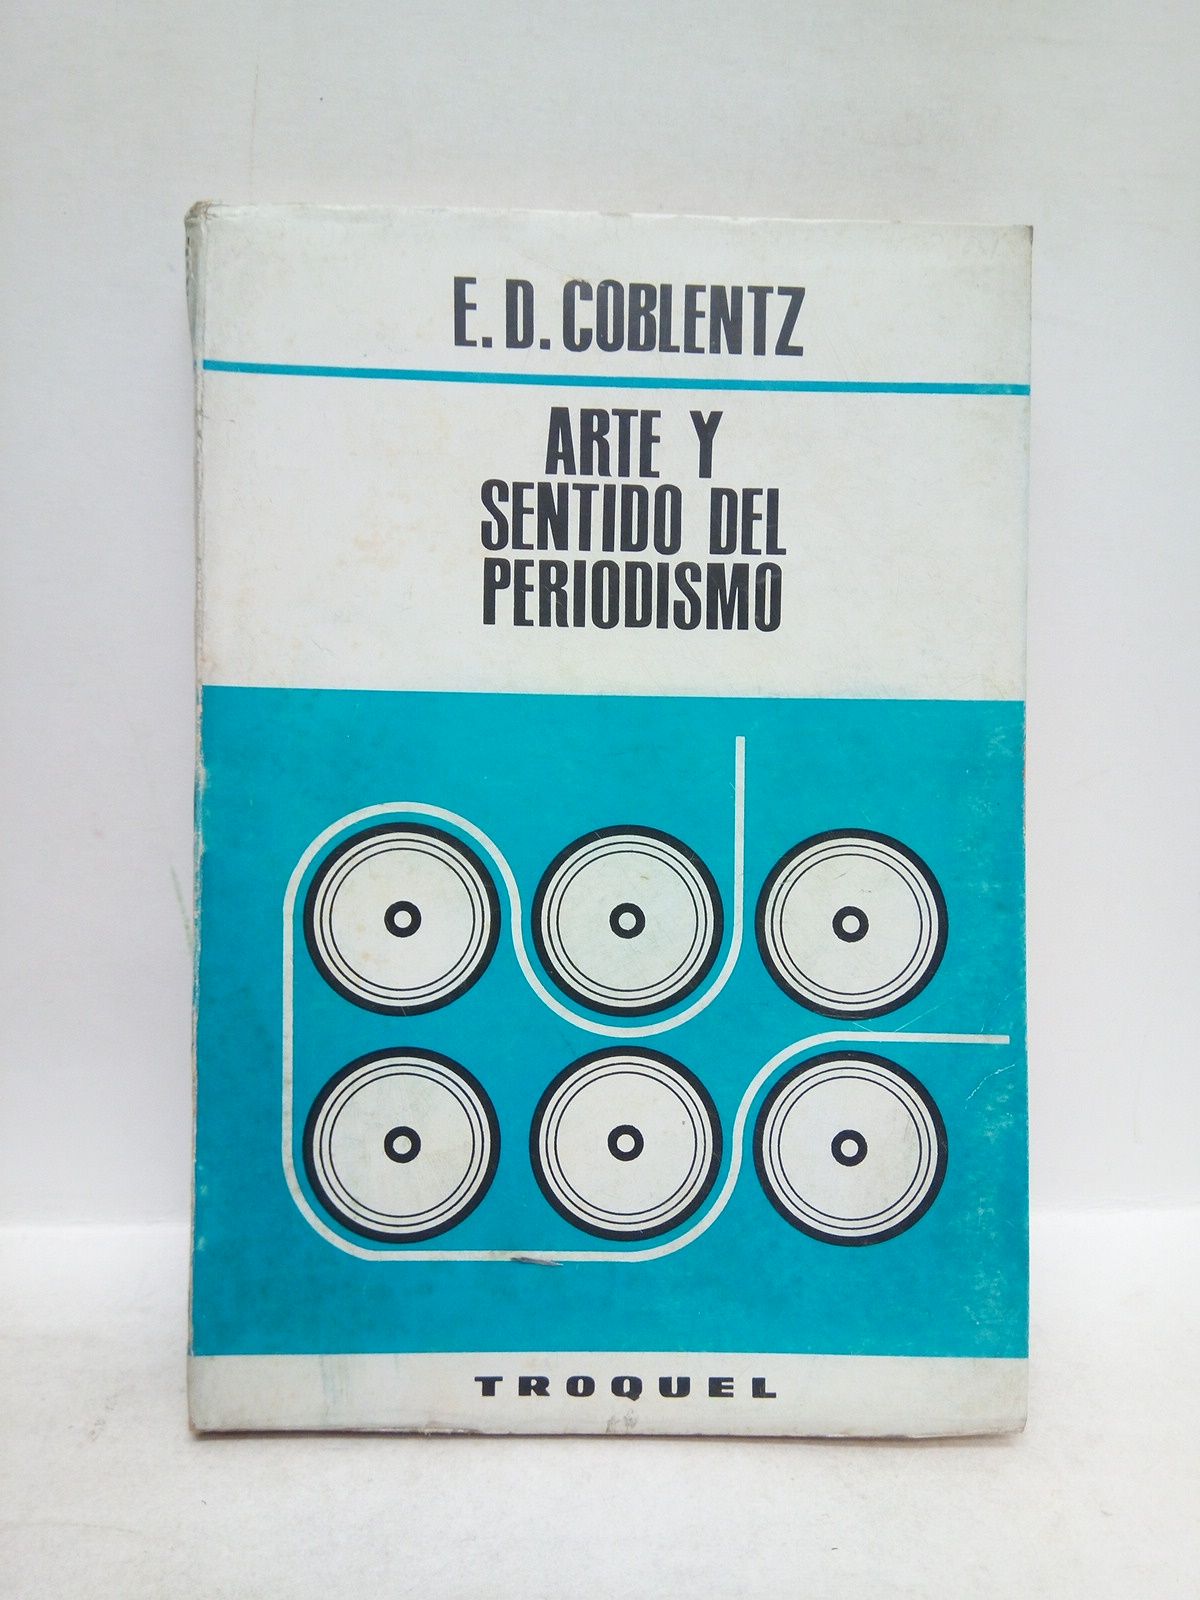 COBLENTZ, Edmond D. - Arte y sentido del periodismo